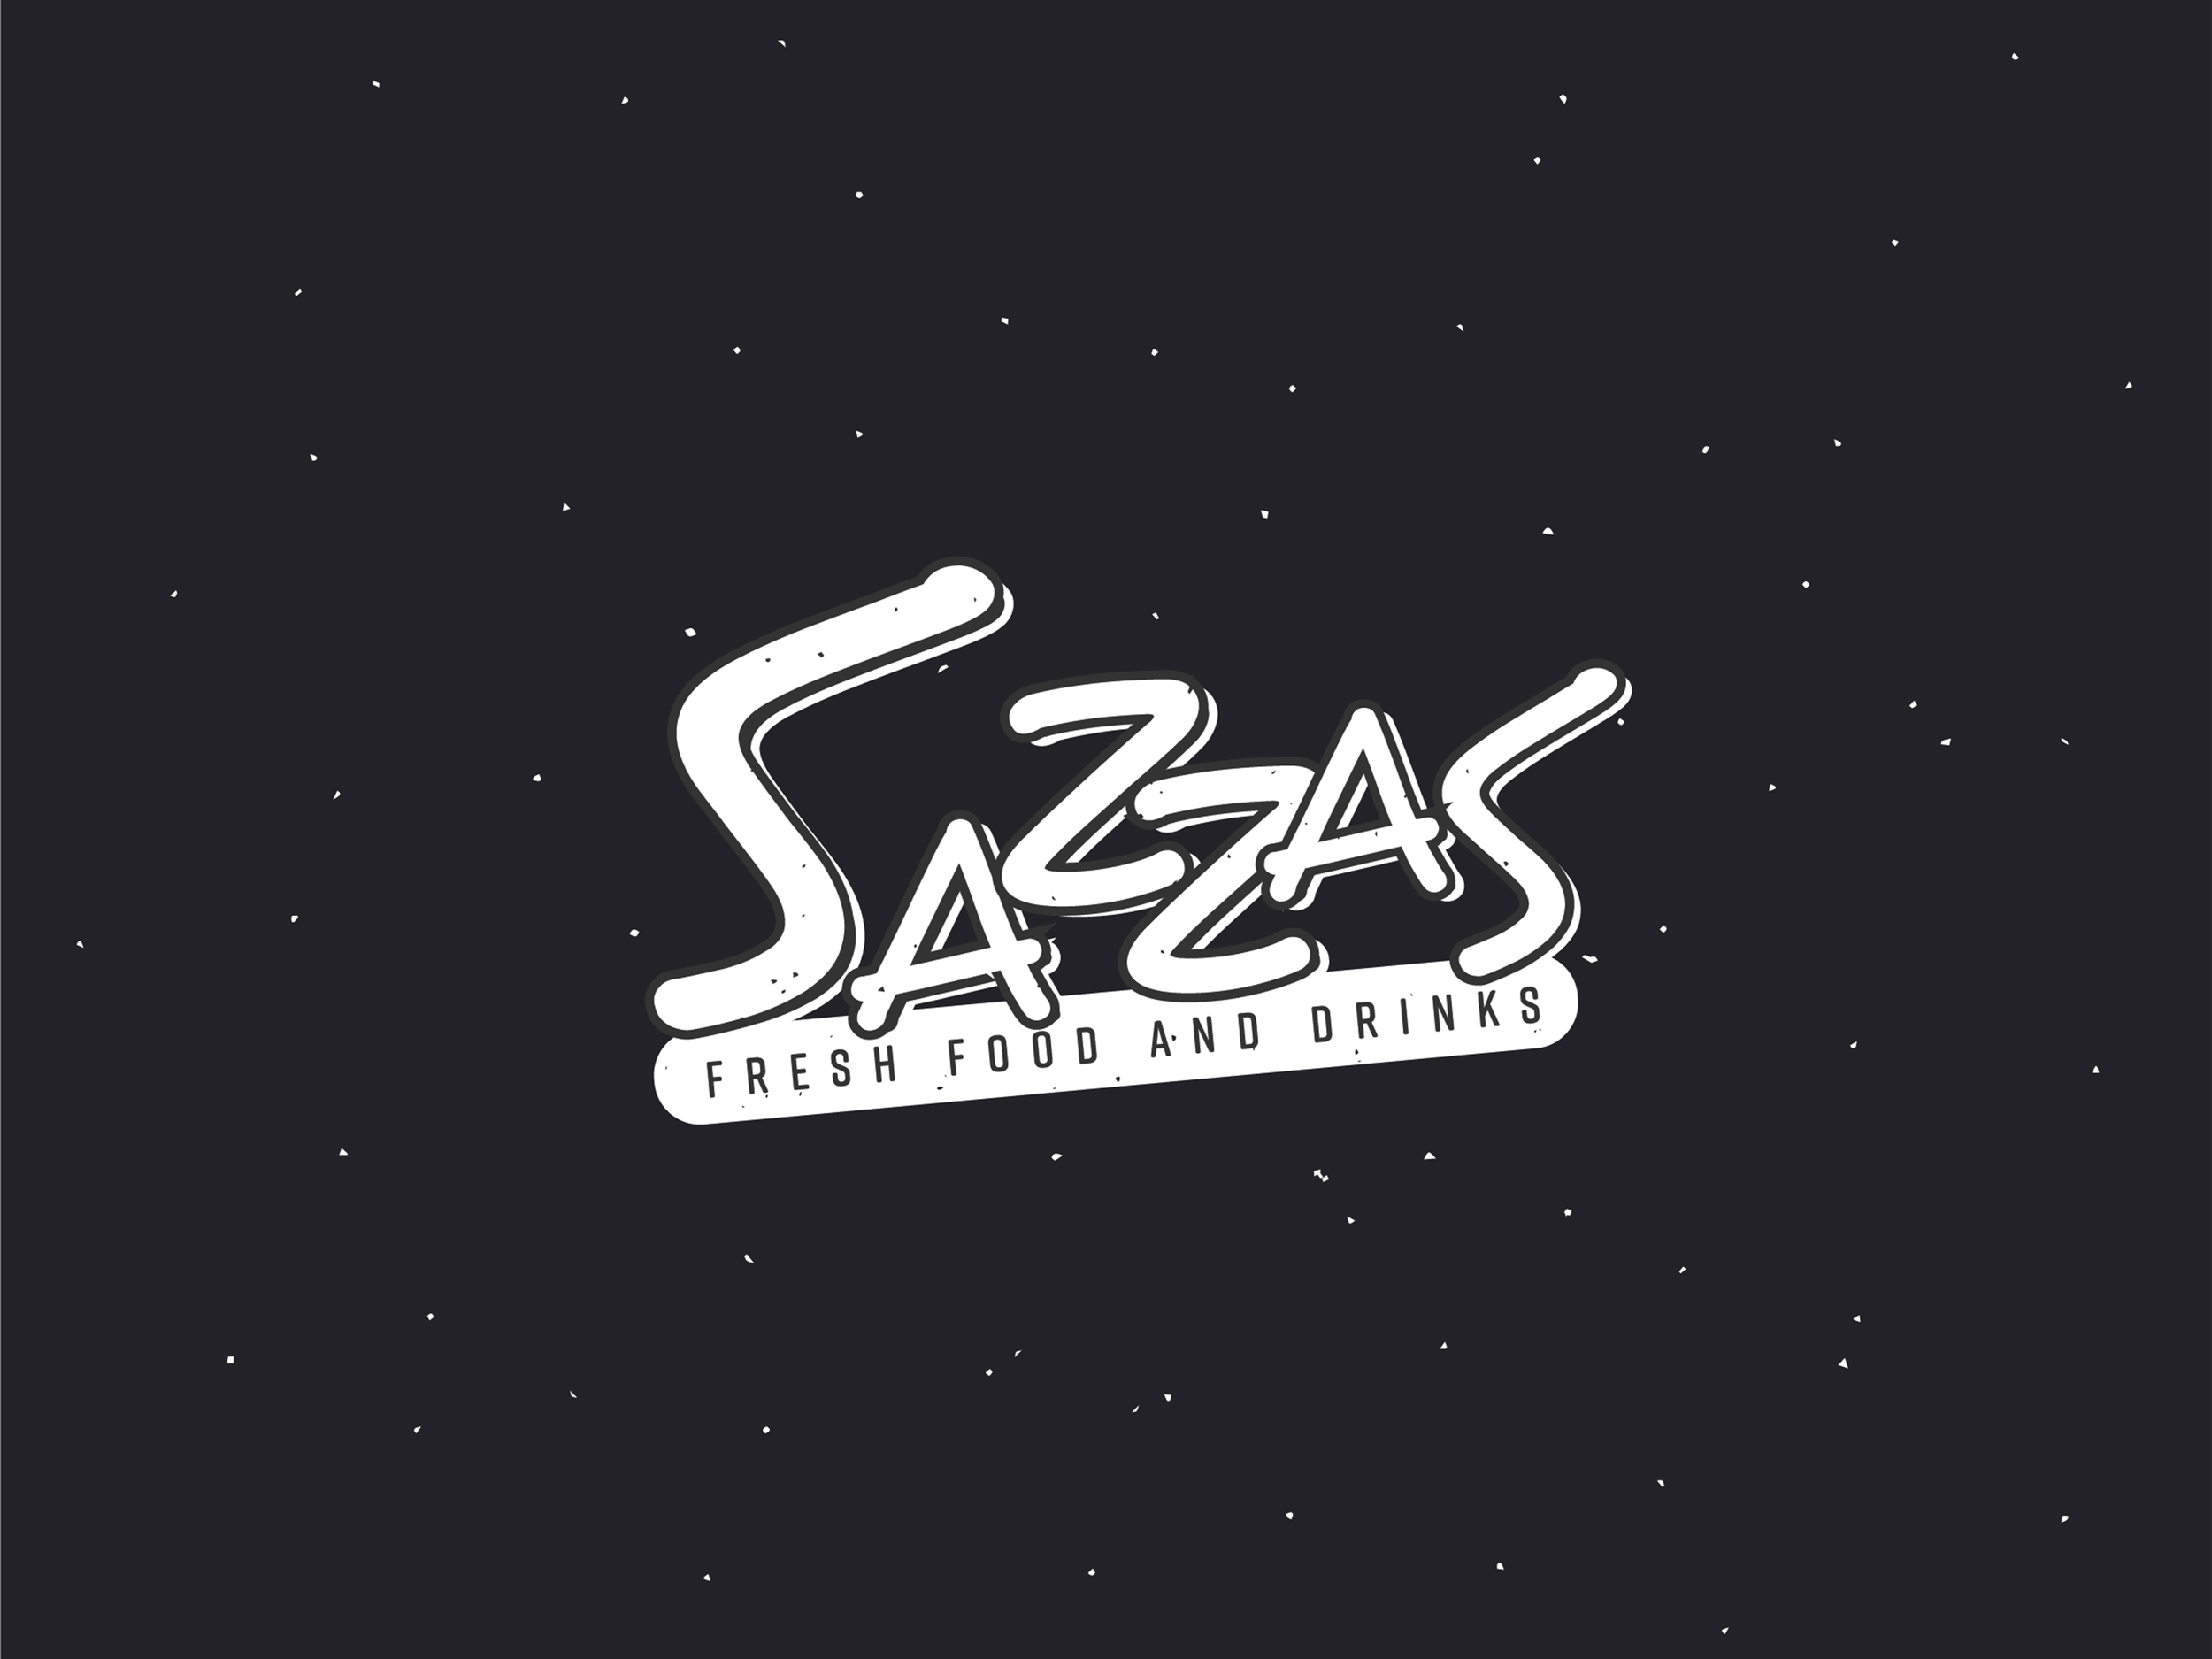 Sazzas – Refonte de l'identité visuelle